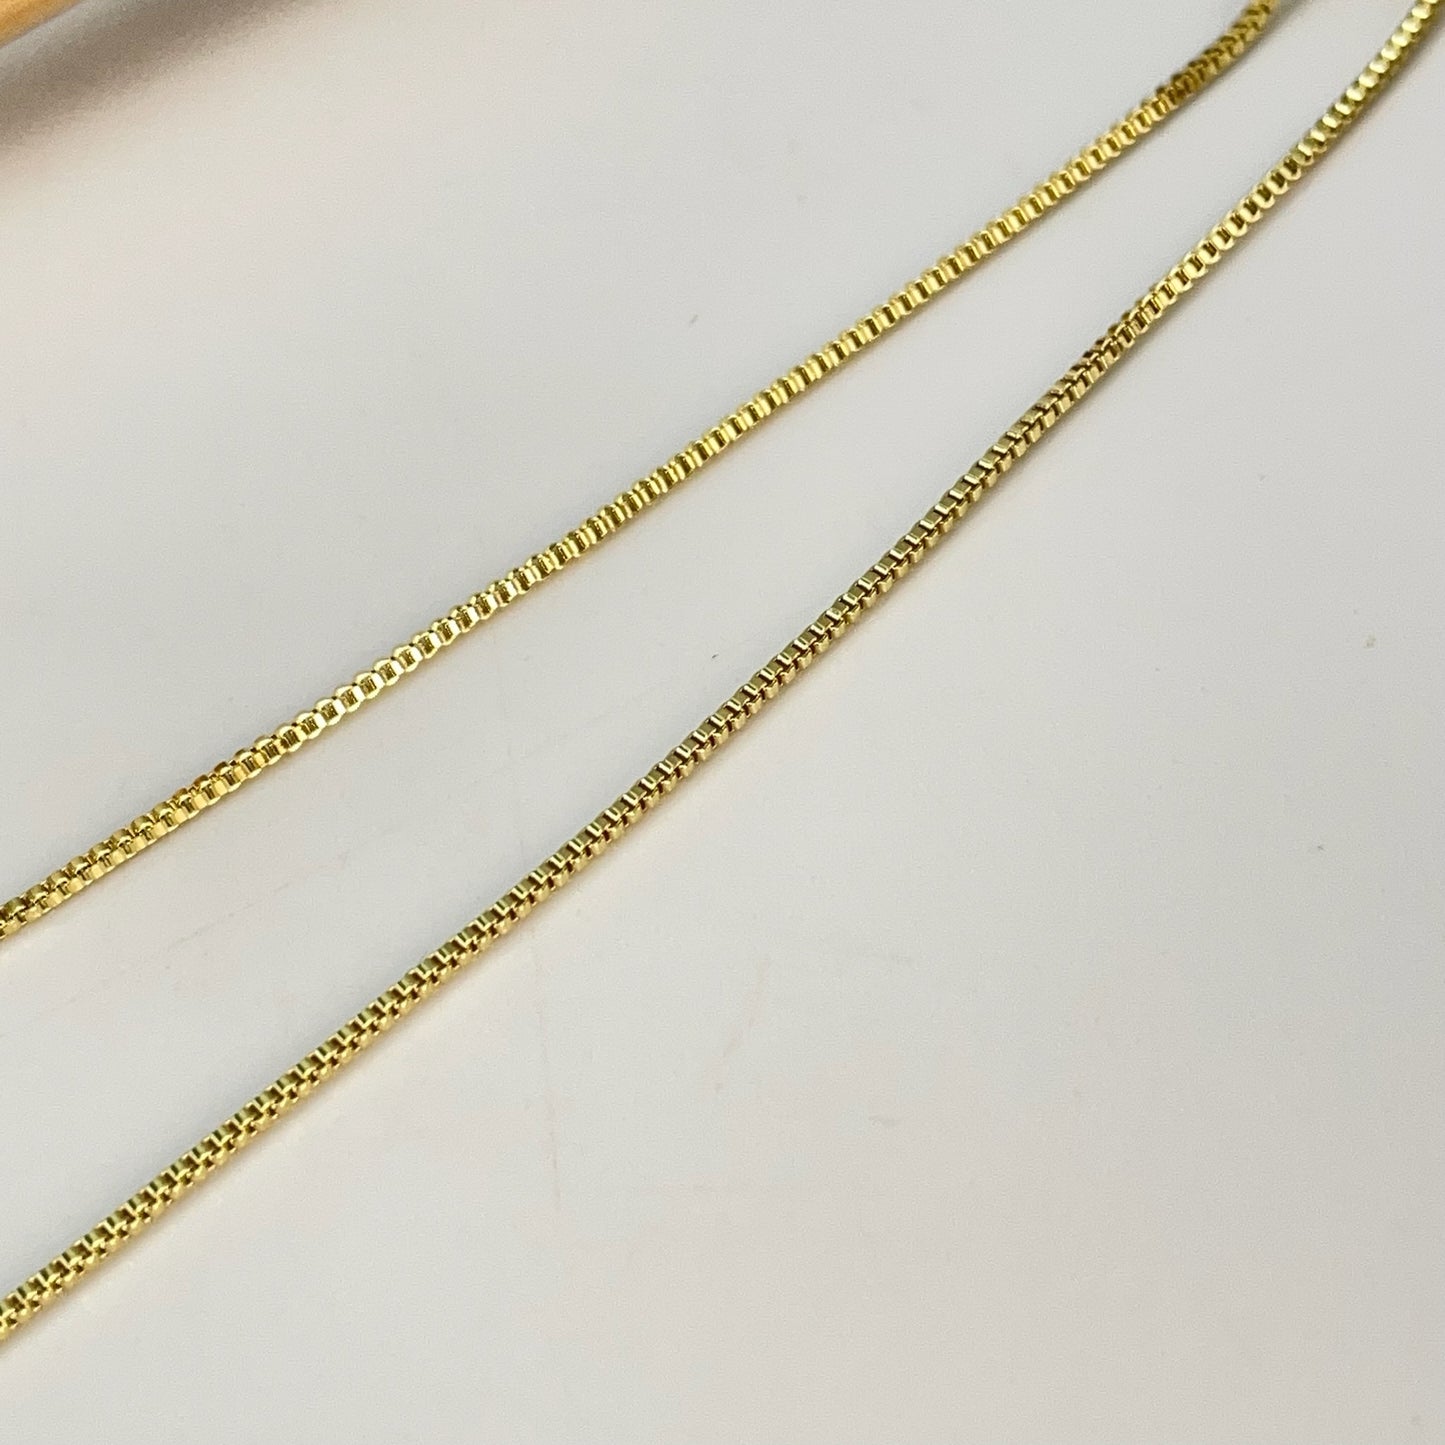 CO192 Collar con 7 Estrellas 4 de 5 mm y 3 de 4 mm Cadena Veneciana 1 mm Largo 40 cm más extensor de 5 cm Collar Terminado Baño Oro Cadenas Bañadas hecho de Bronce Bañado en Oro 18K Joyas Bañadas en Oro